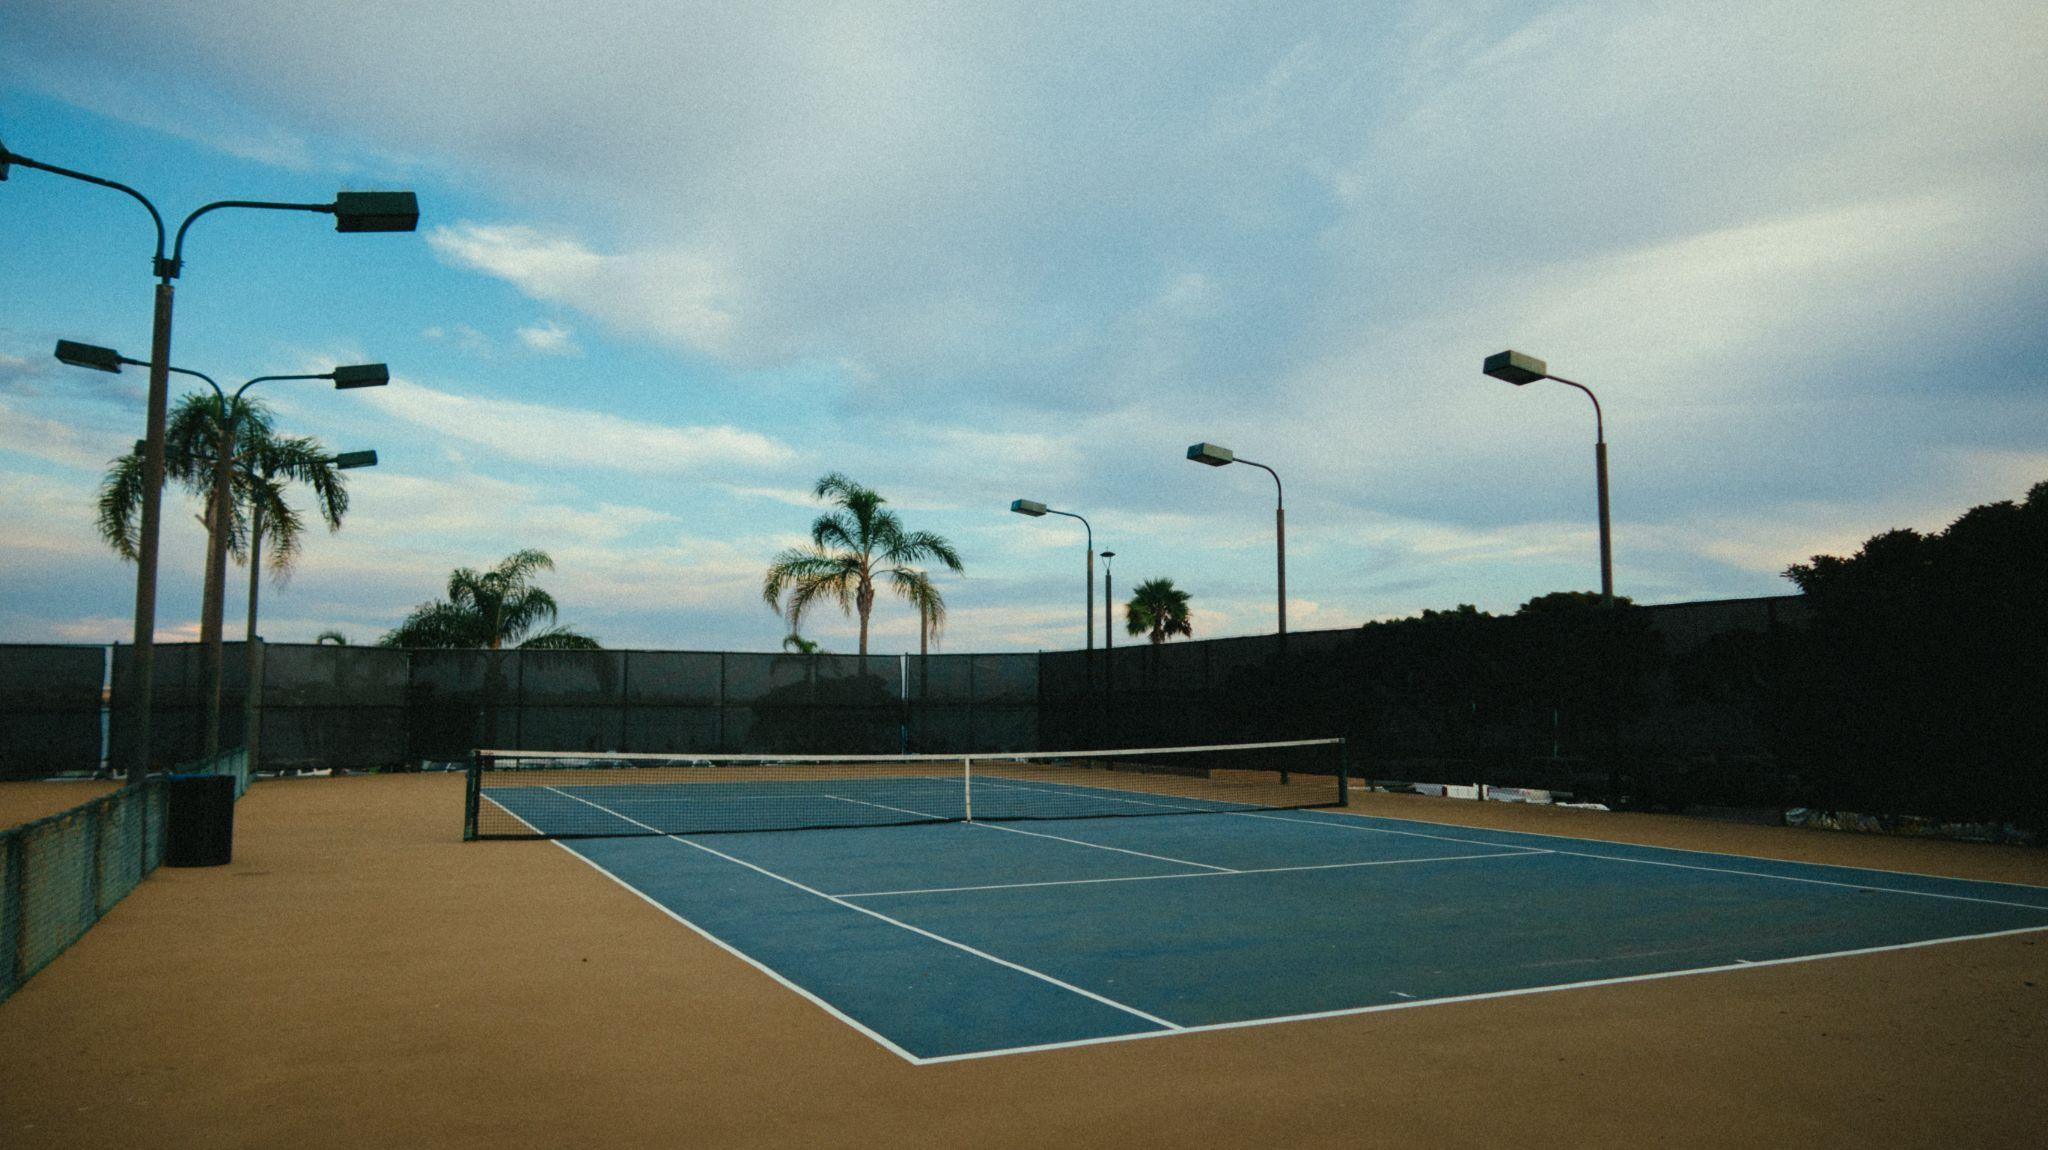 Blue hard court for a tennis match